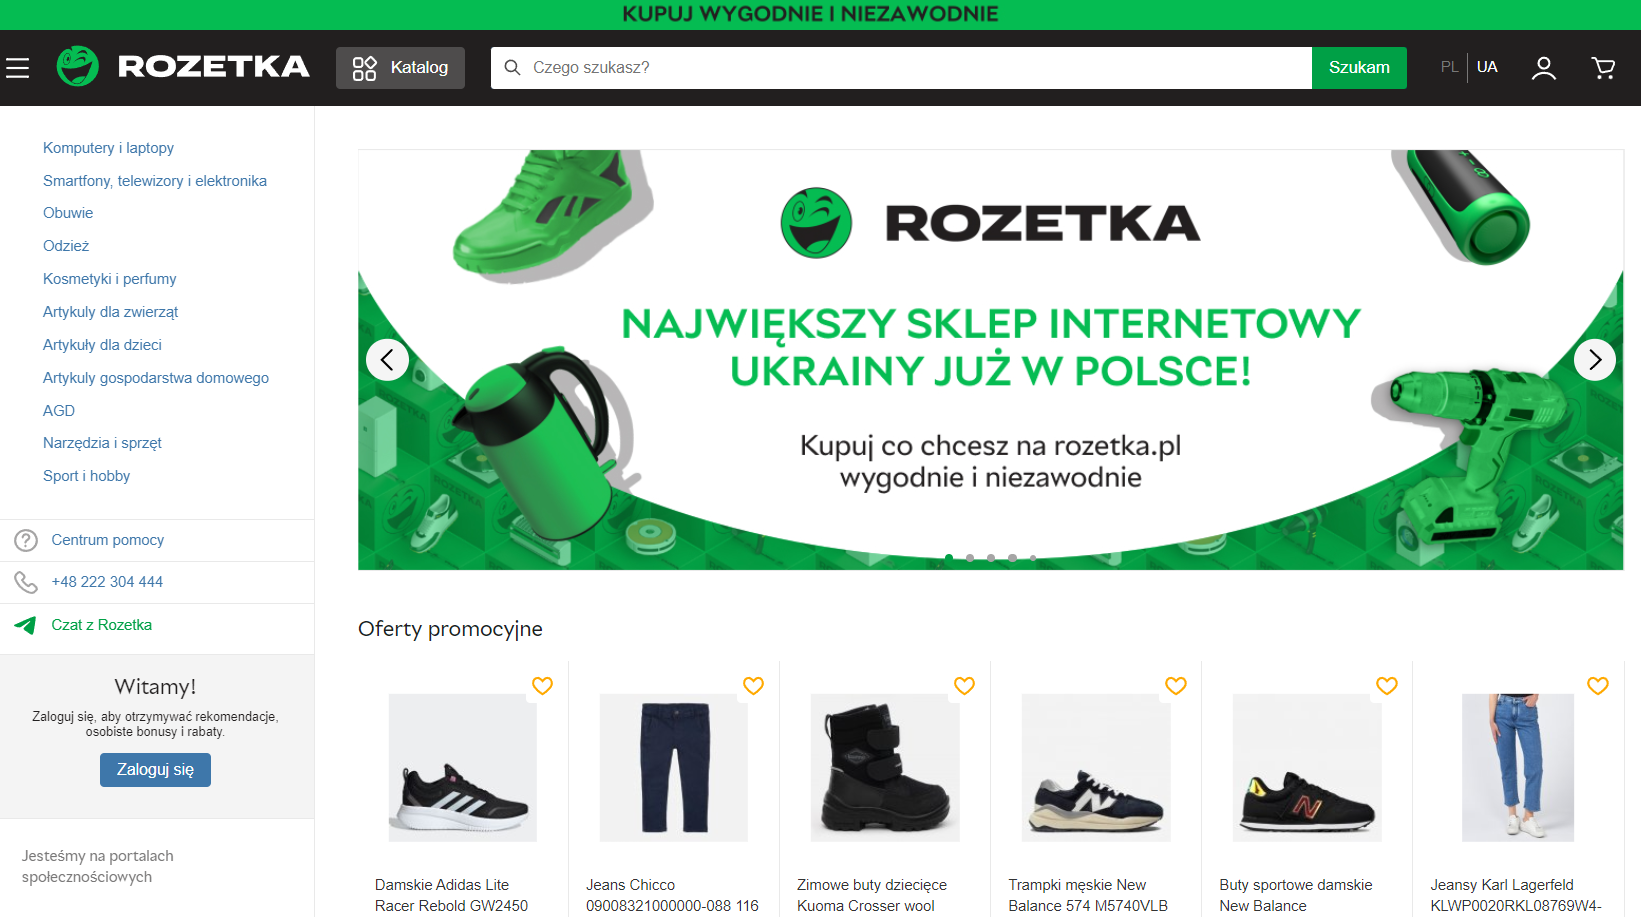 Rozetka ha aperto un negozio online in Polonia ed è alla ricerca di nuovi dipendenti